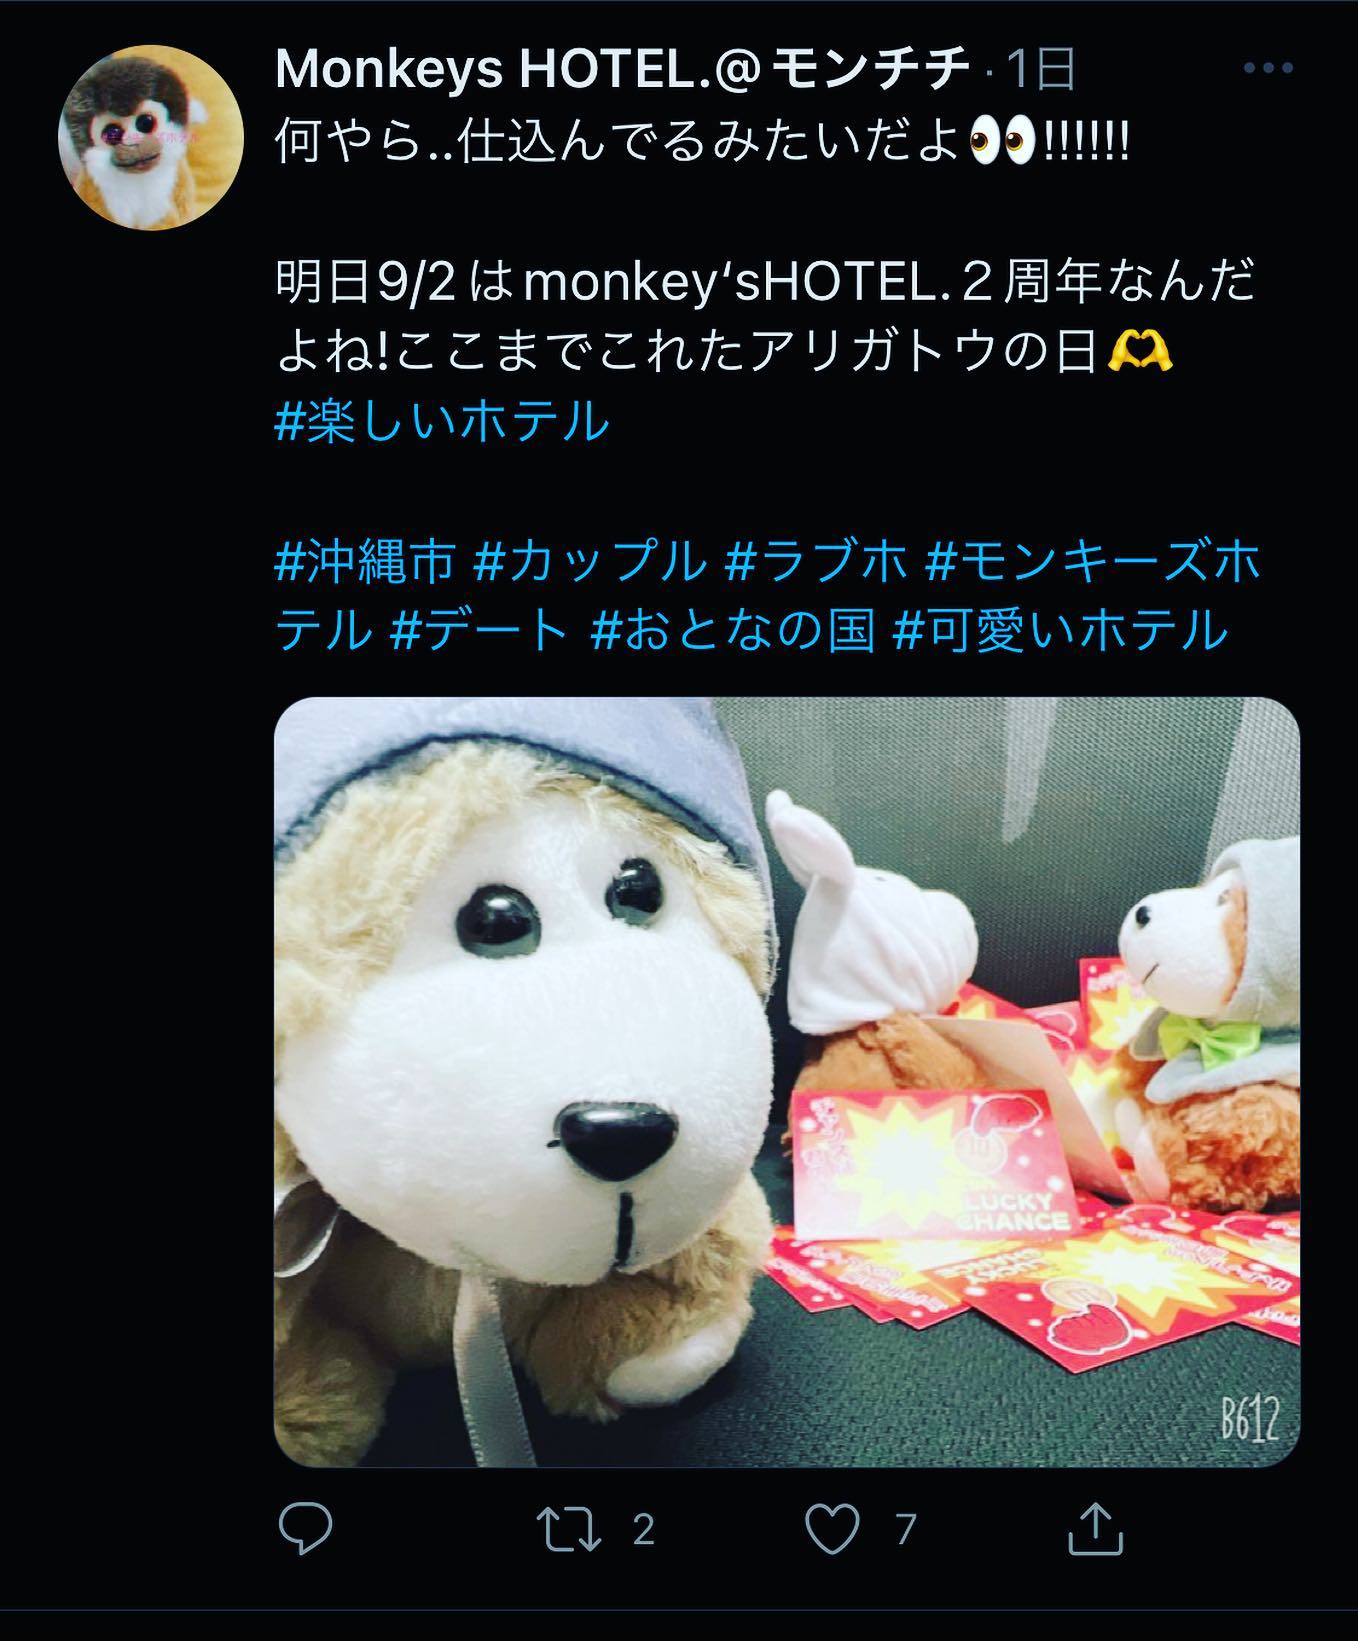 今日はお陰様でグランドオープン２周年❣️皆様に支えられてありがとうがいっぱいこれからもよろしくお願いしますTwitterも見てみてねＨＰhttp://hotel-monkeys.fanTwitterhttps://twitter.com/_monkeeeeeys...#沖縄のインフルエンサーになりたい#コスプレがいちばん多いホテル#ノリのホテル#MONKEYS#HOTELMONKEYS#hotel#ホテル#okinawa#沖縄#期間限定#グランドオープン#沖縄グルメ#レジャーホテル#今だけ#限定#sky#インスタ映え#ばえスポット#幸せ時間#ラブホテル#沖縄市#沖縄市ラブホテル#楽しい時間#モンキーズホテル#ホテルモンキーズ#モンキーズ#セール#monkeyshotel